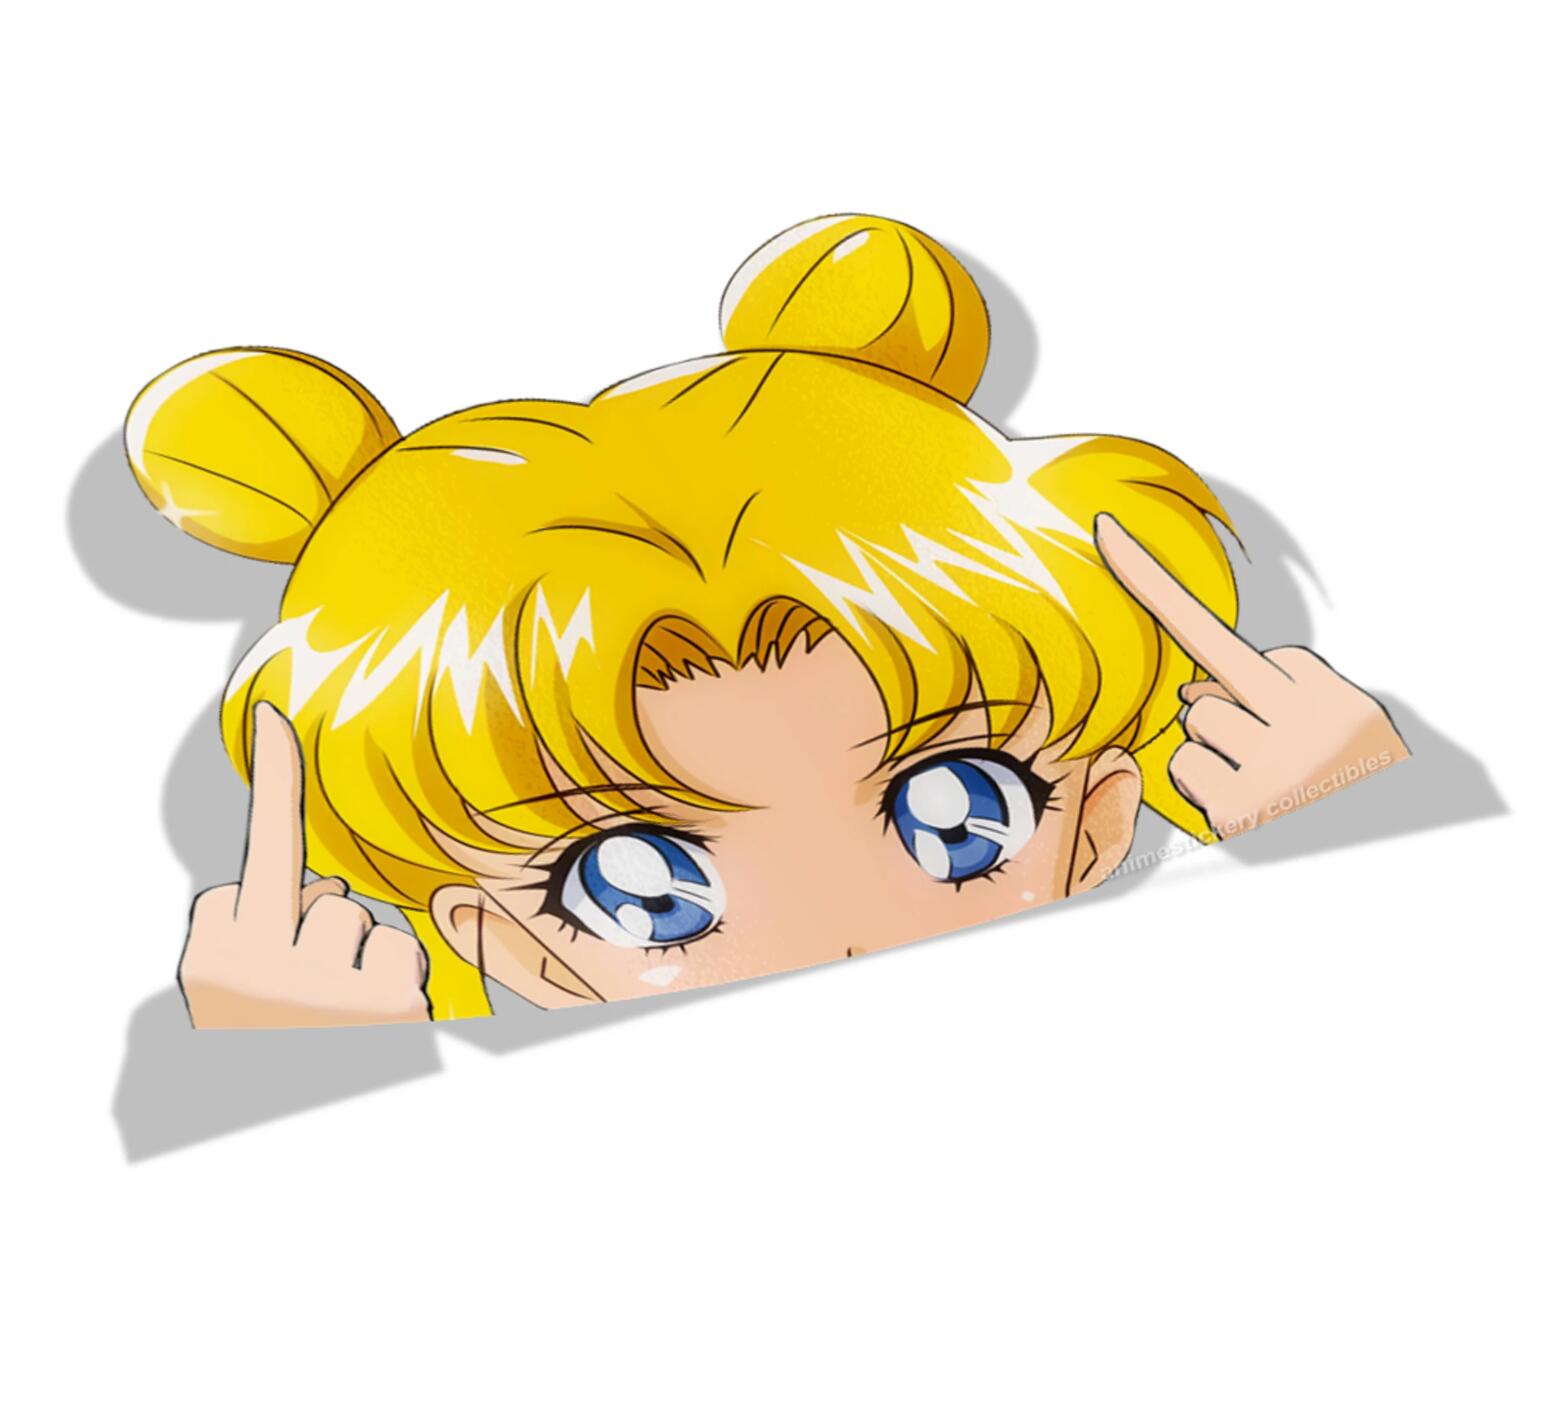 Sailor Moon anime car sticker 2 styles